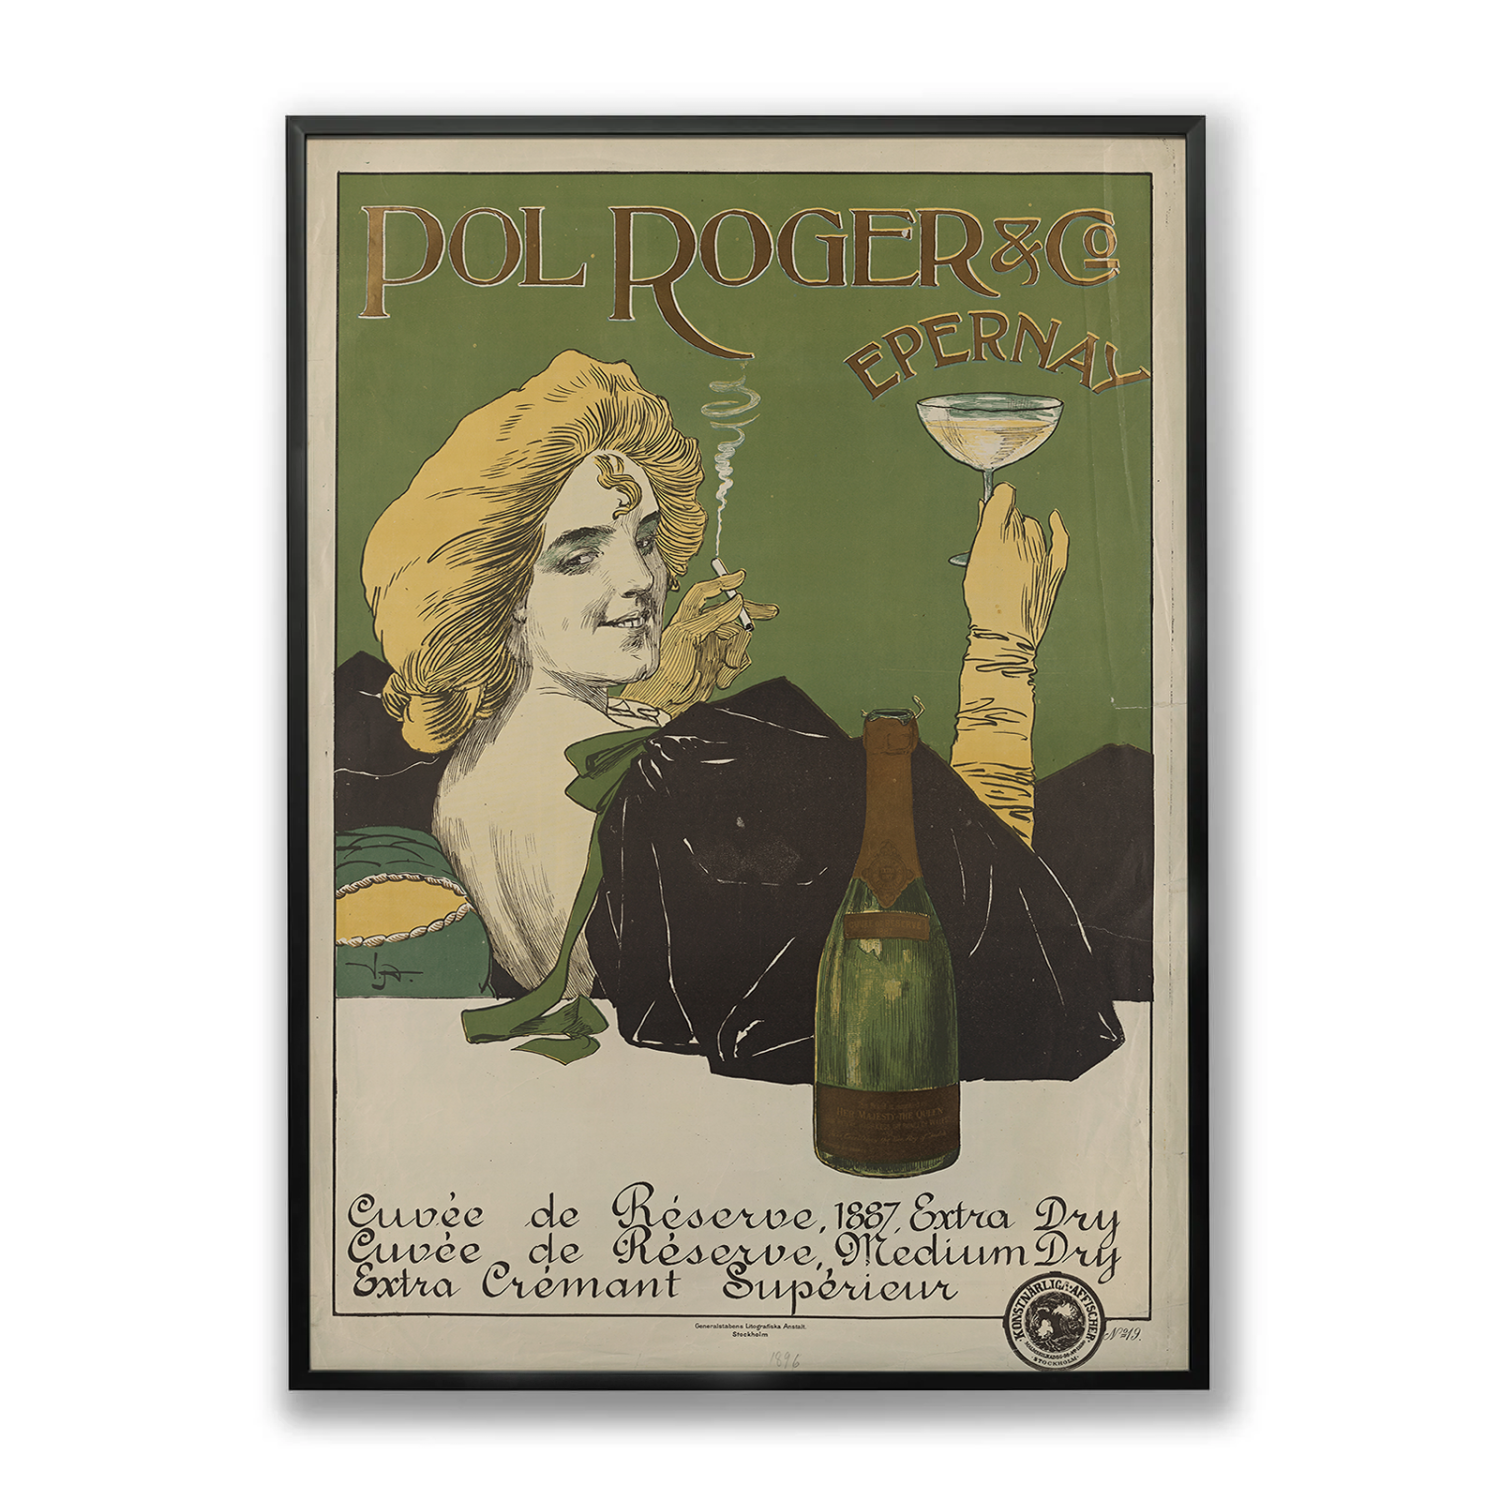 Pol Roger & Co - Reklam för champagne